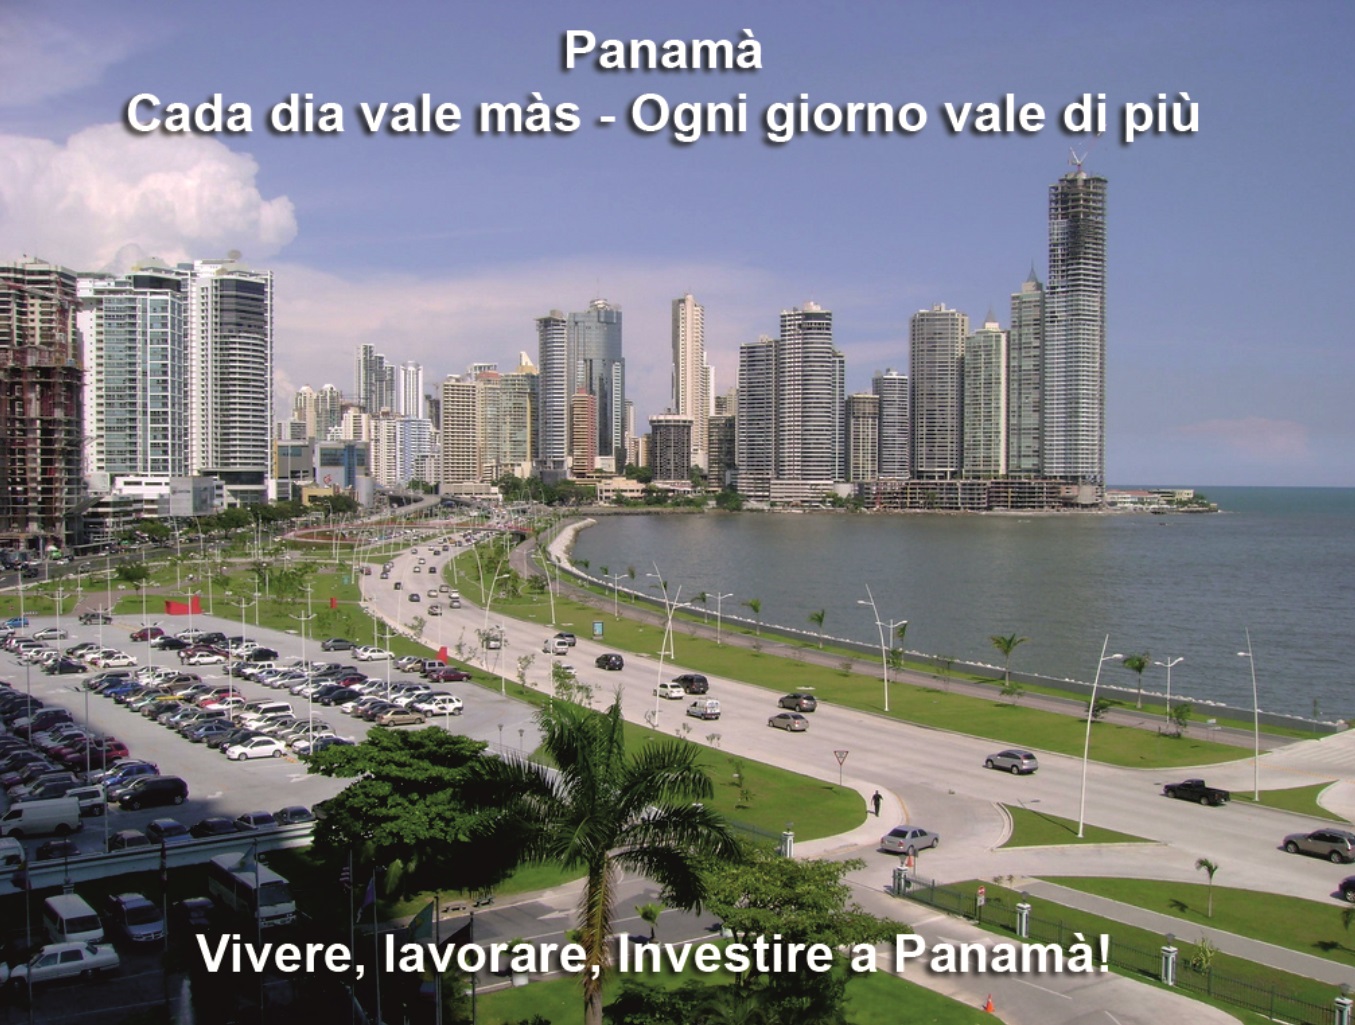 Investire a Panama è Legale